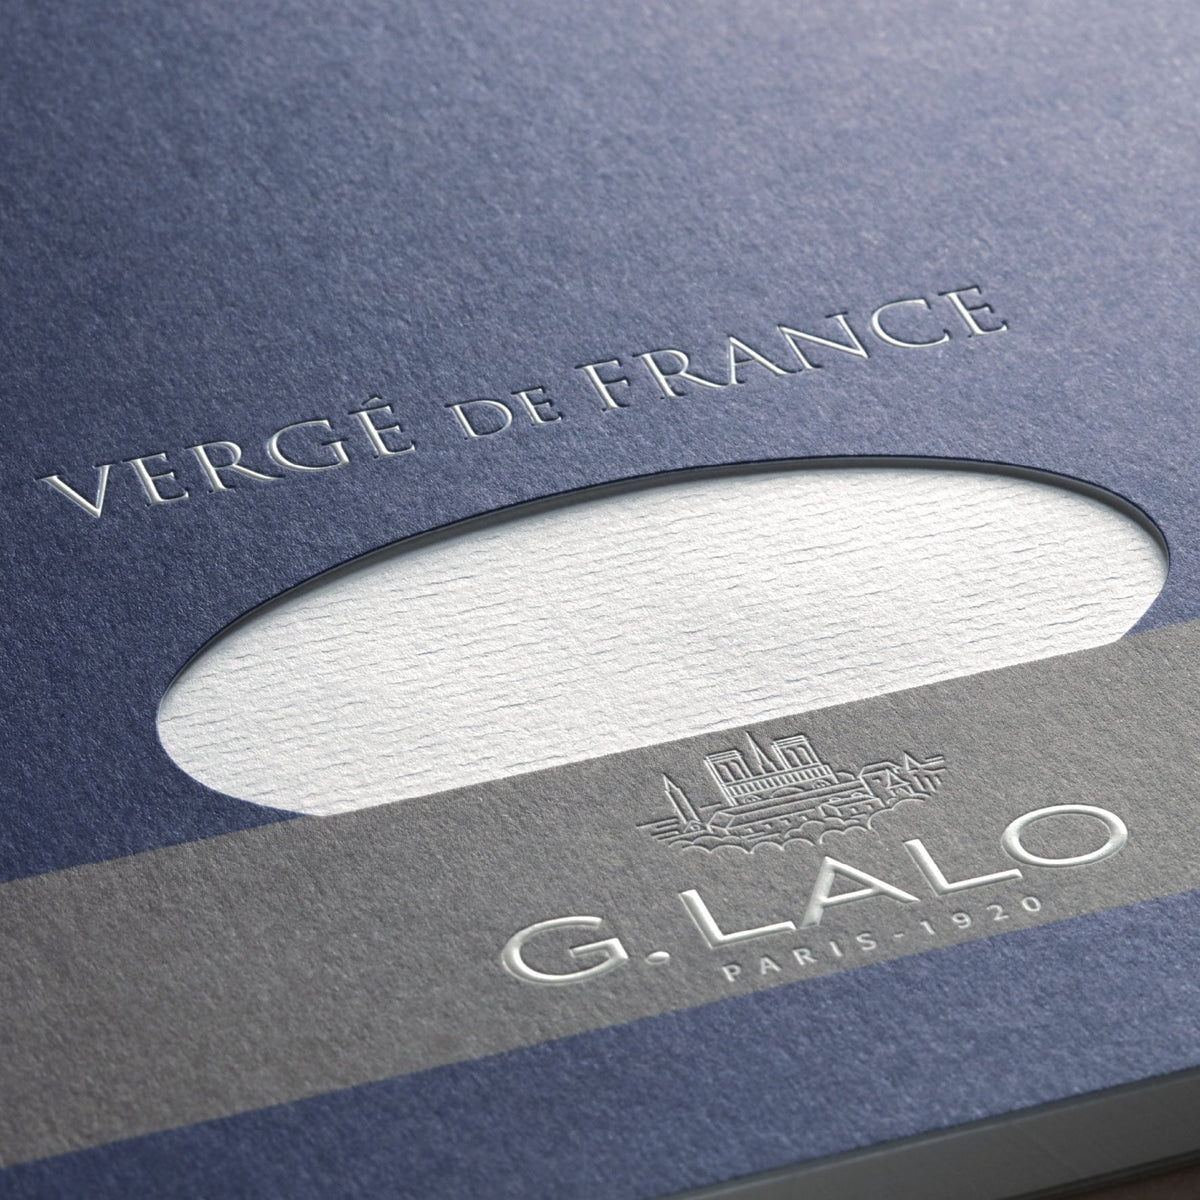 G. Lalo - Writing Pad - A5 - Laid Extra-White (Vergé de France)